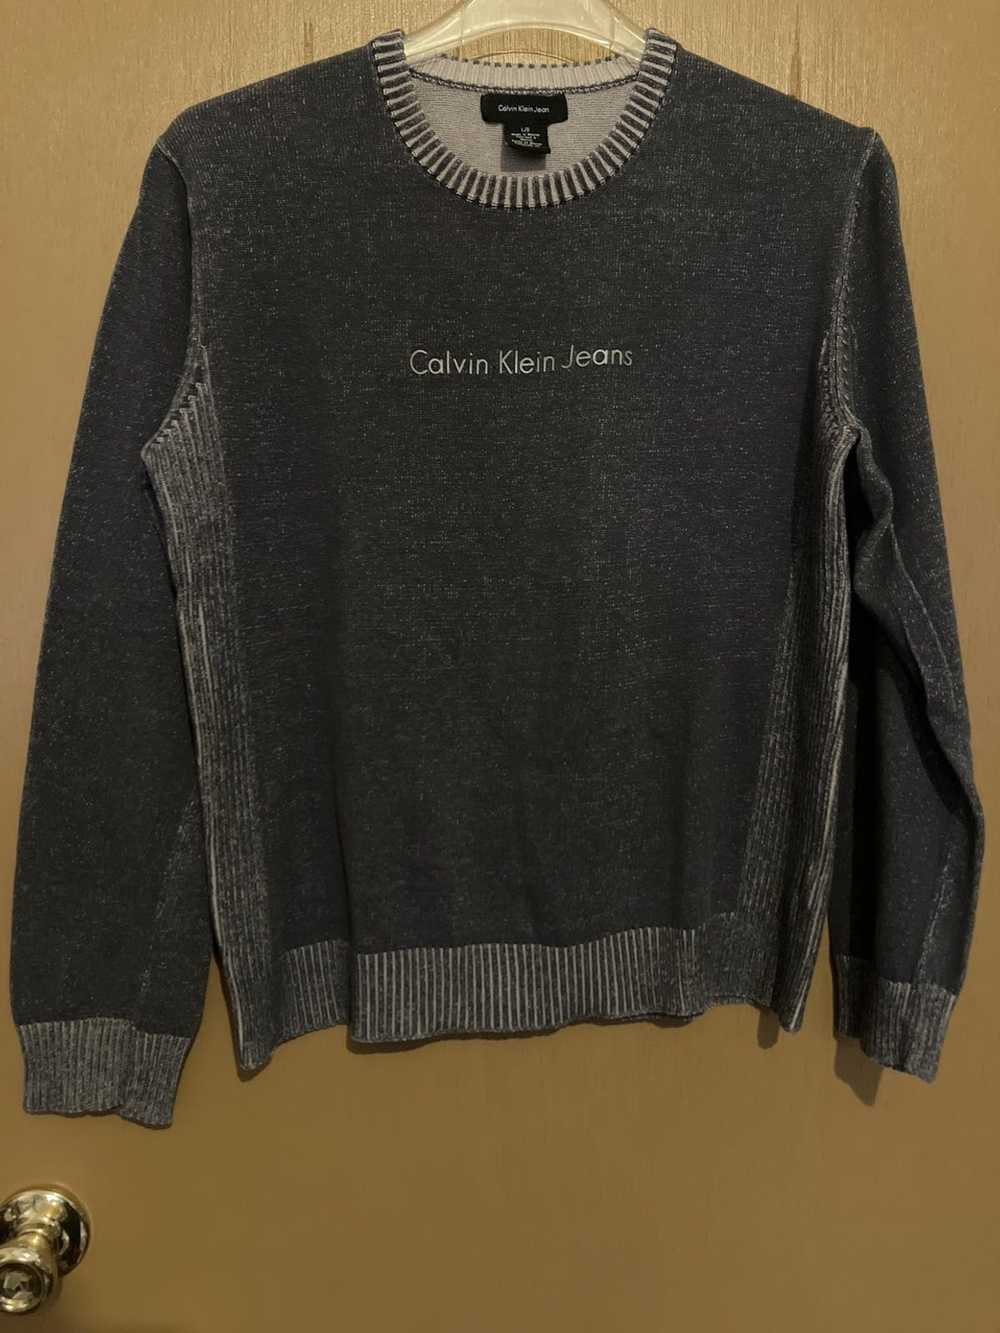 Calvin Klein Calvin Klein Jeans Sweatshirt - image 1